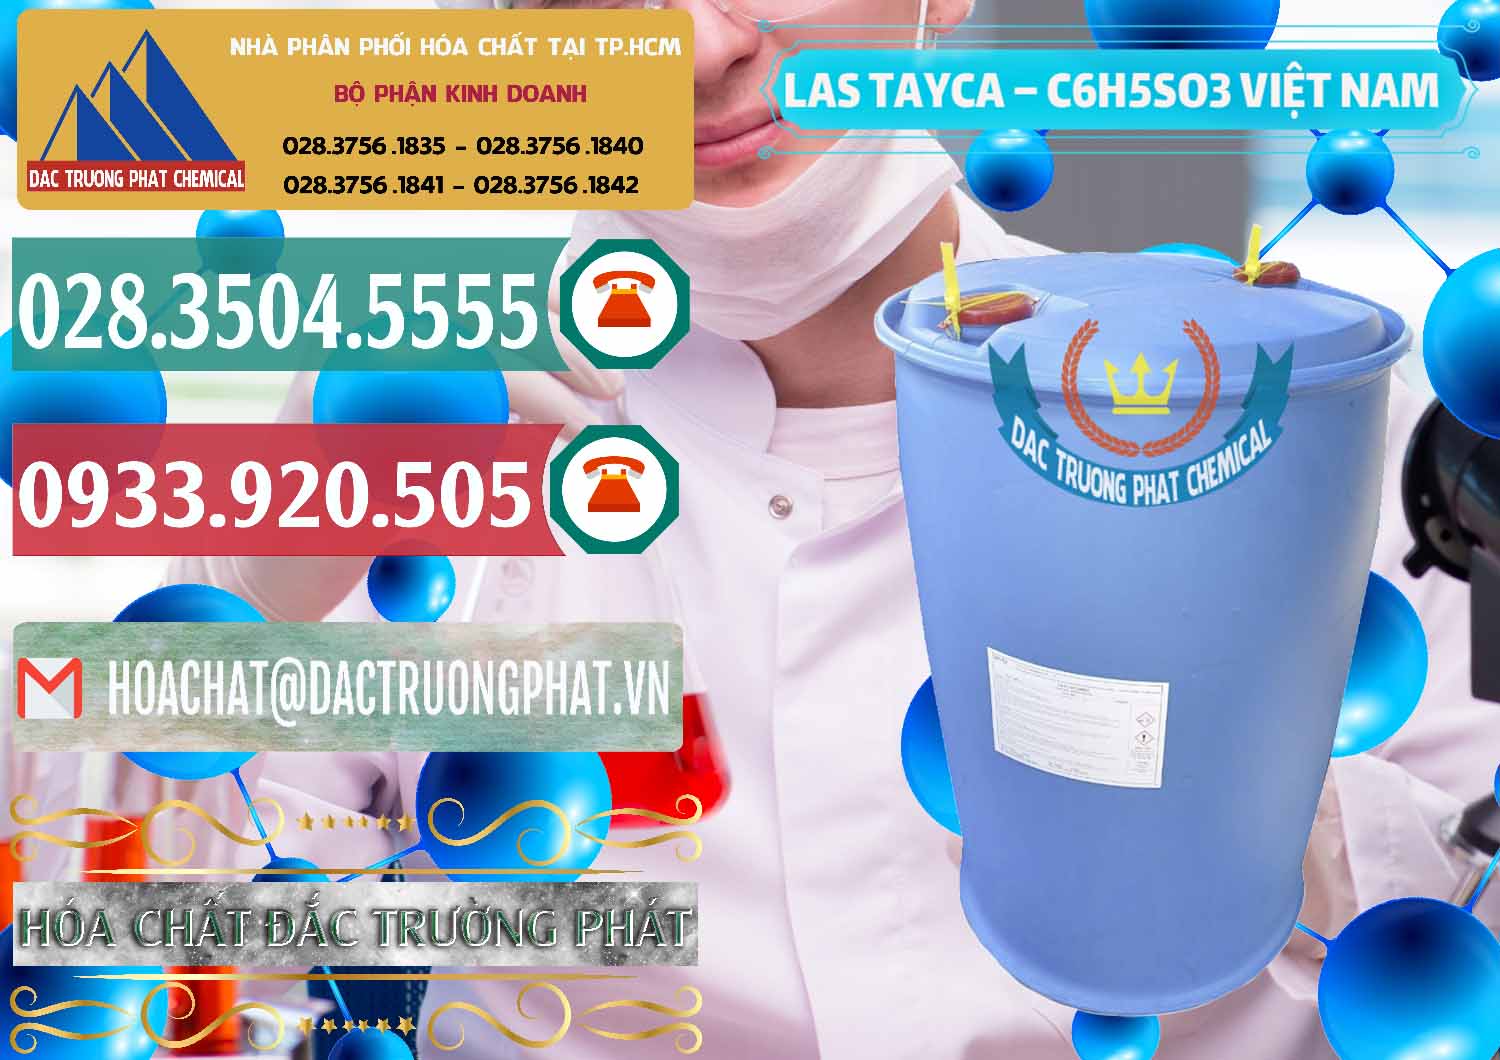 Nơi chuyên cung ứng & phân phối Chất tạo bọt Las Tayca Việt Nam - 0305 - Cty chuyên cung cấp & kinh doanh hóa chất tại TP.HCM - muabanhoachat.vn